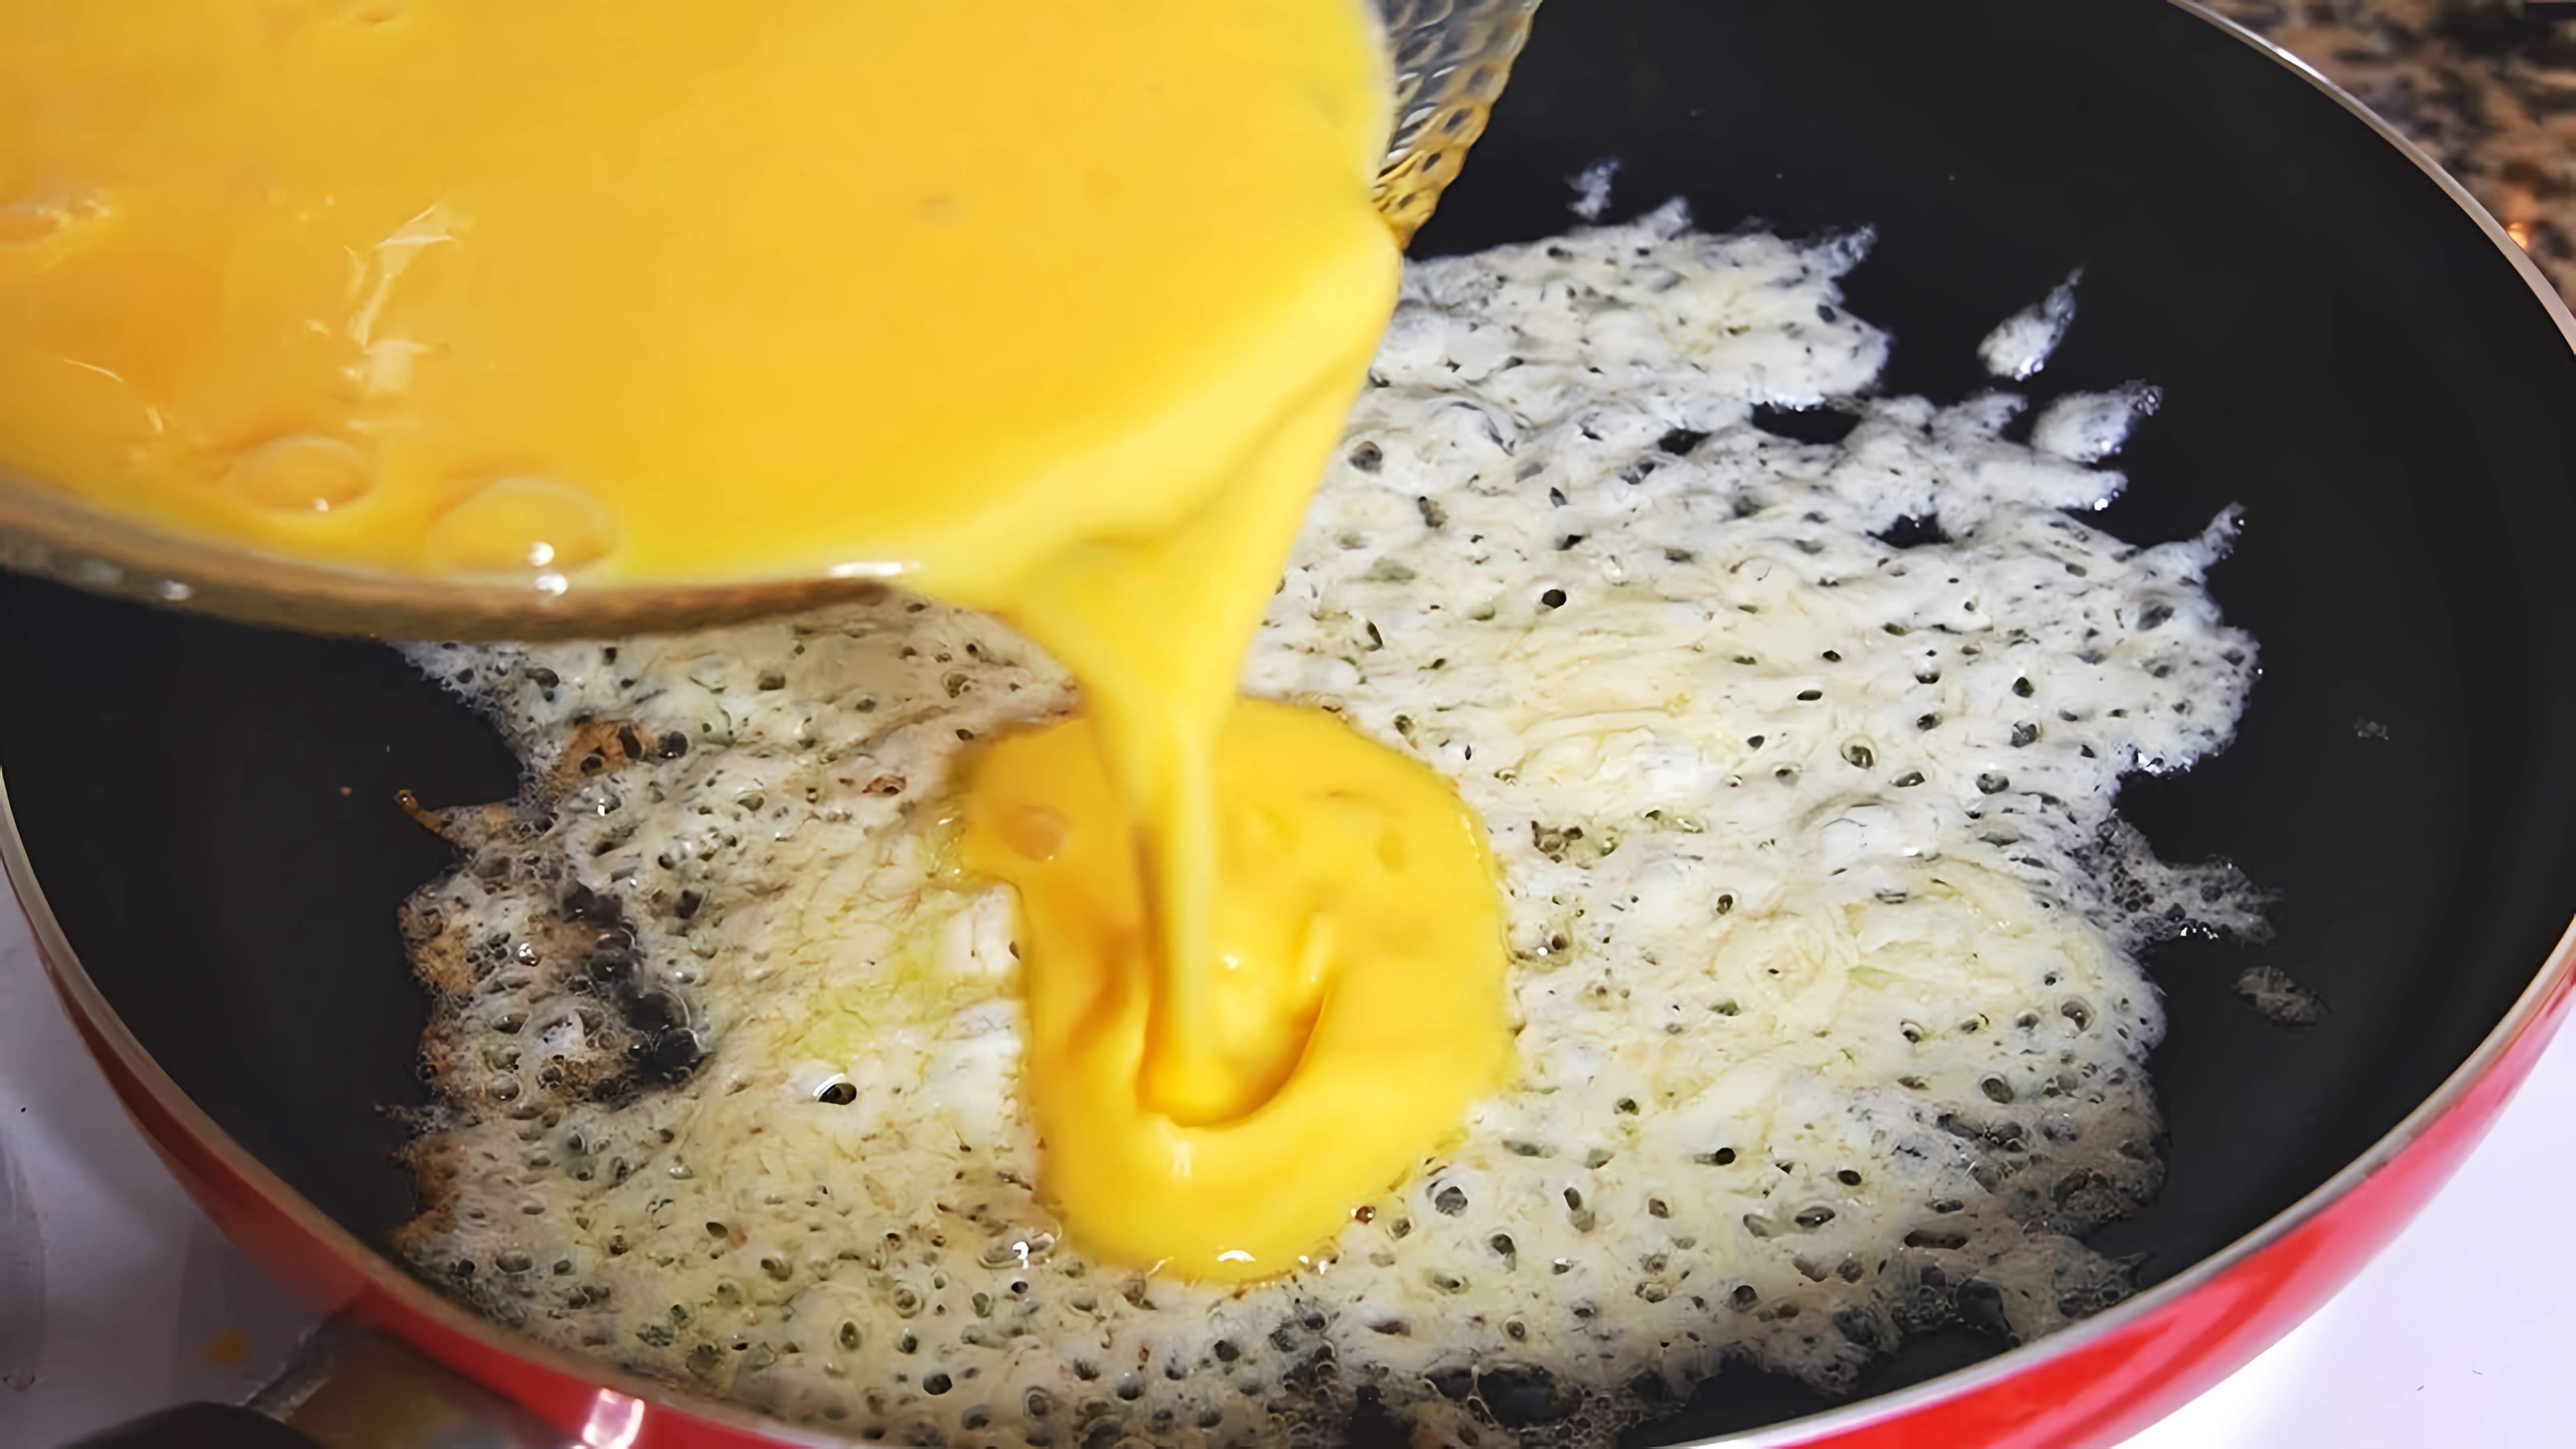 В этом видео демонстрируется процесс приготовления омлета на сковороде с сырной корочкой